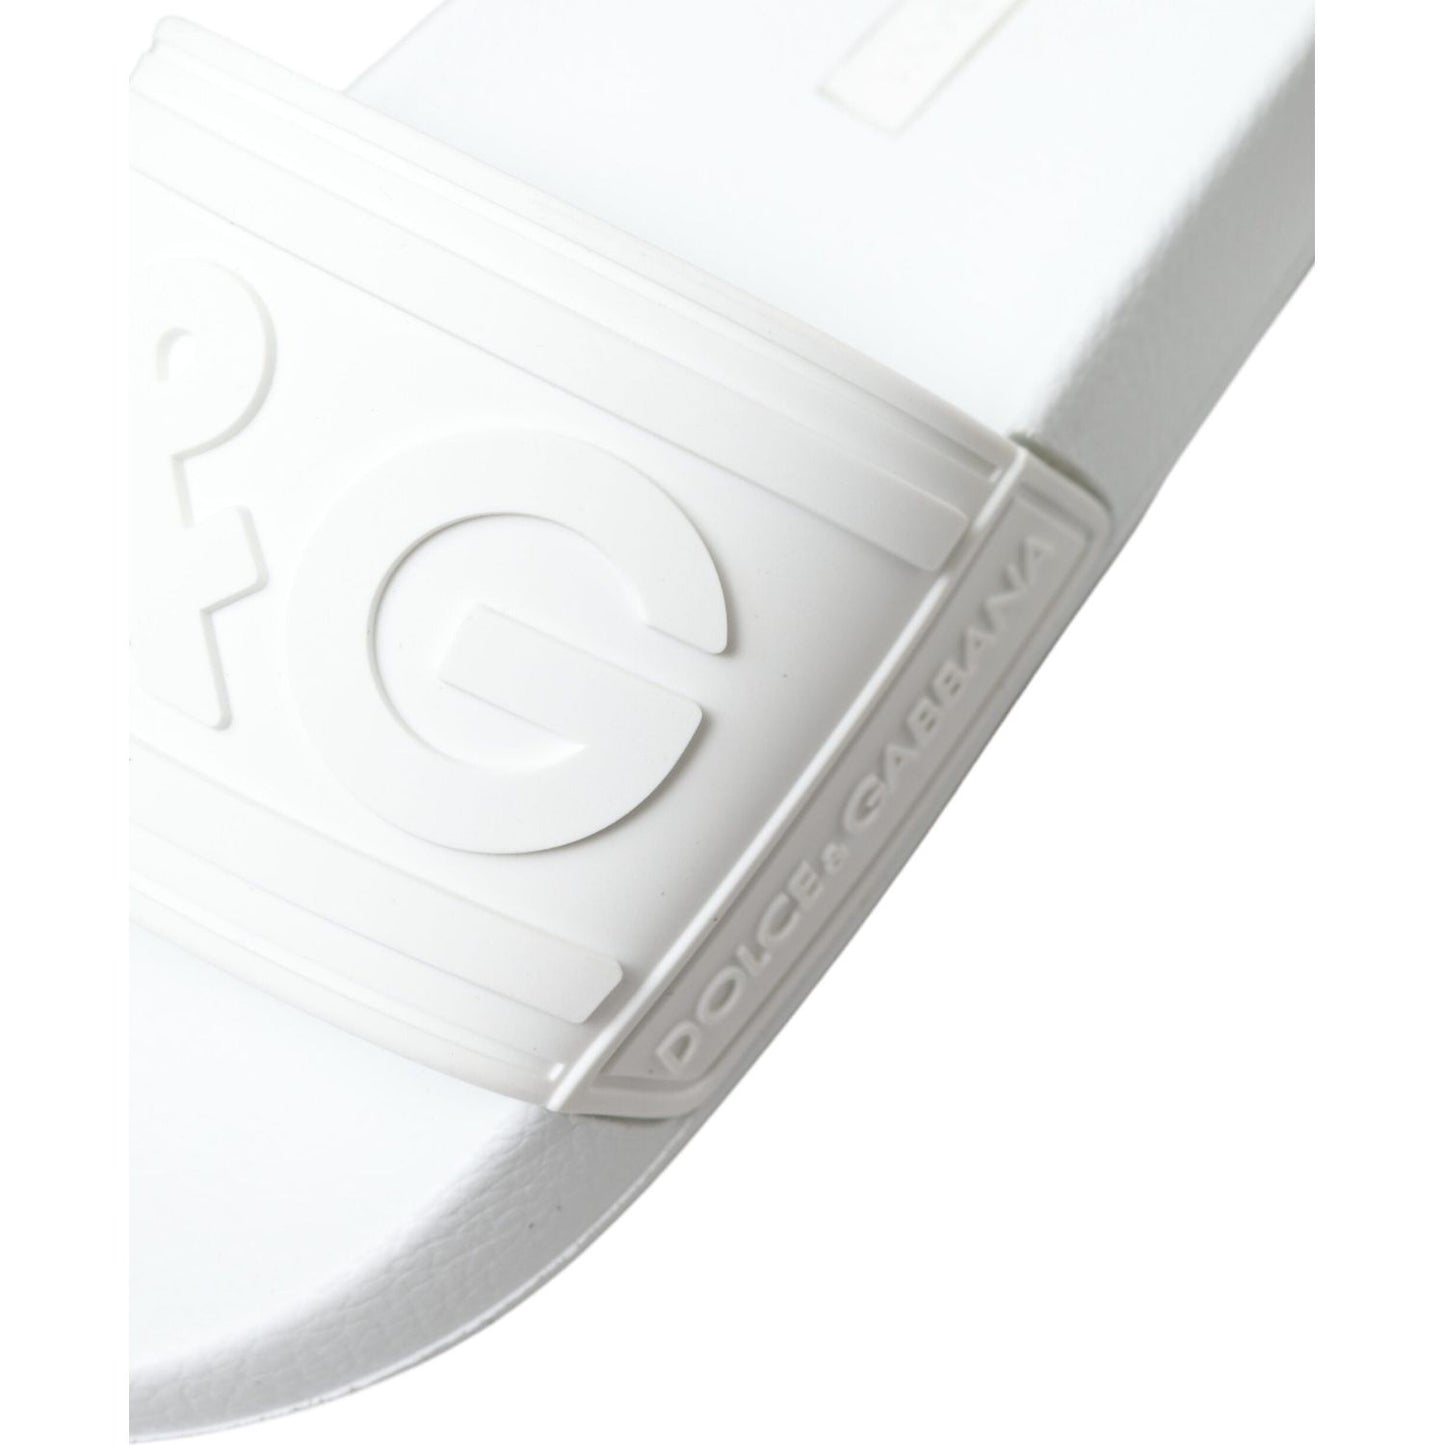 Dolce & Gabbana Elegant White Logo Slides white-rubber-sandals-slides-beachwear-shoes 465A3230-BG-scaled-bdefac08-59d.jpg